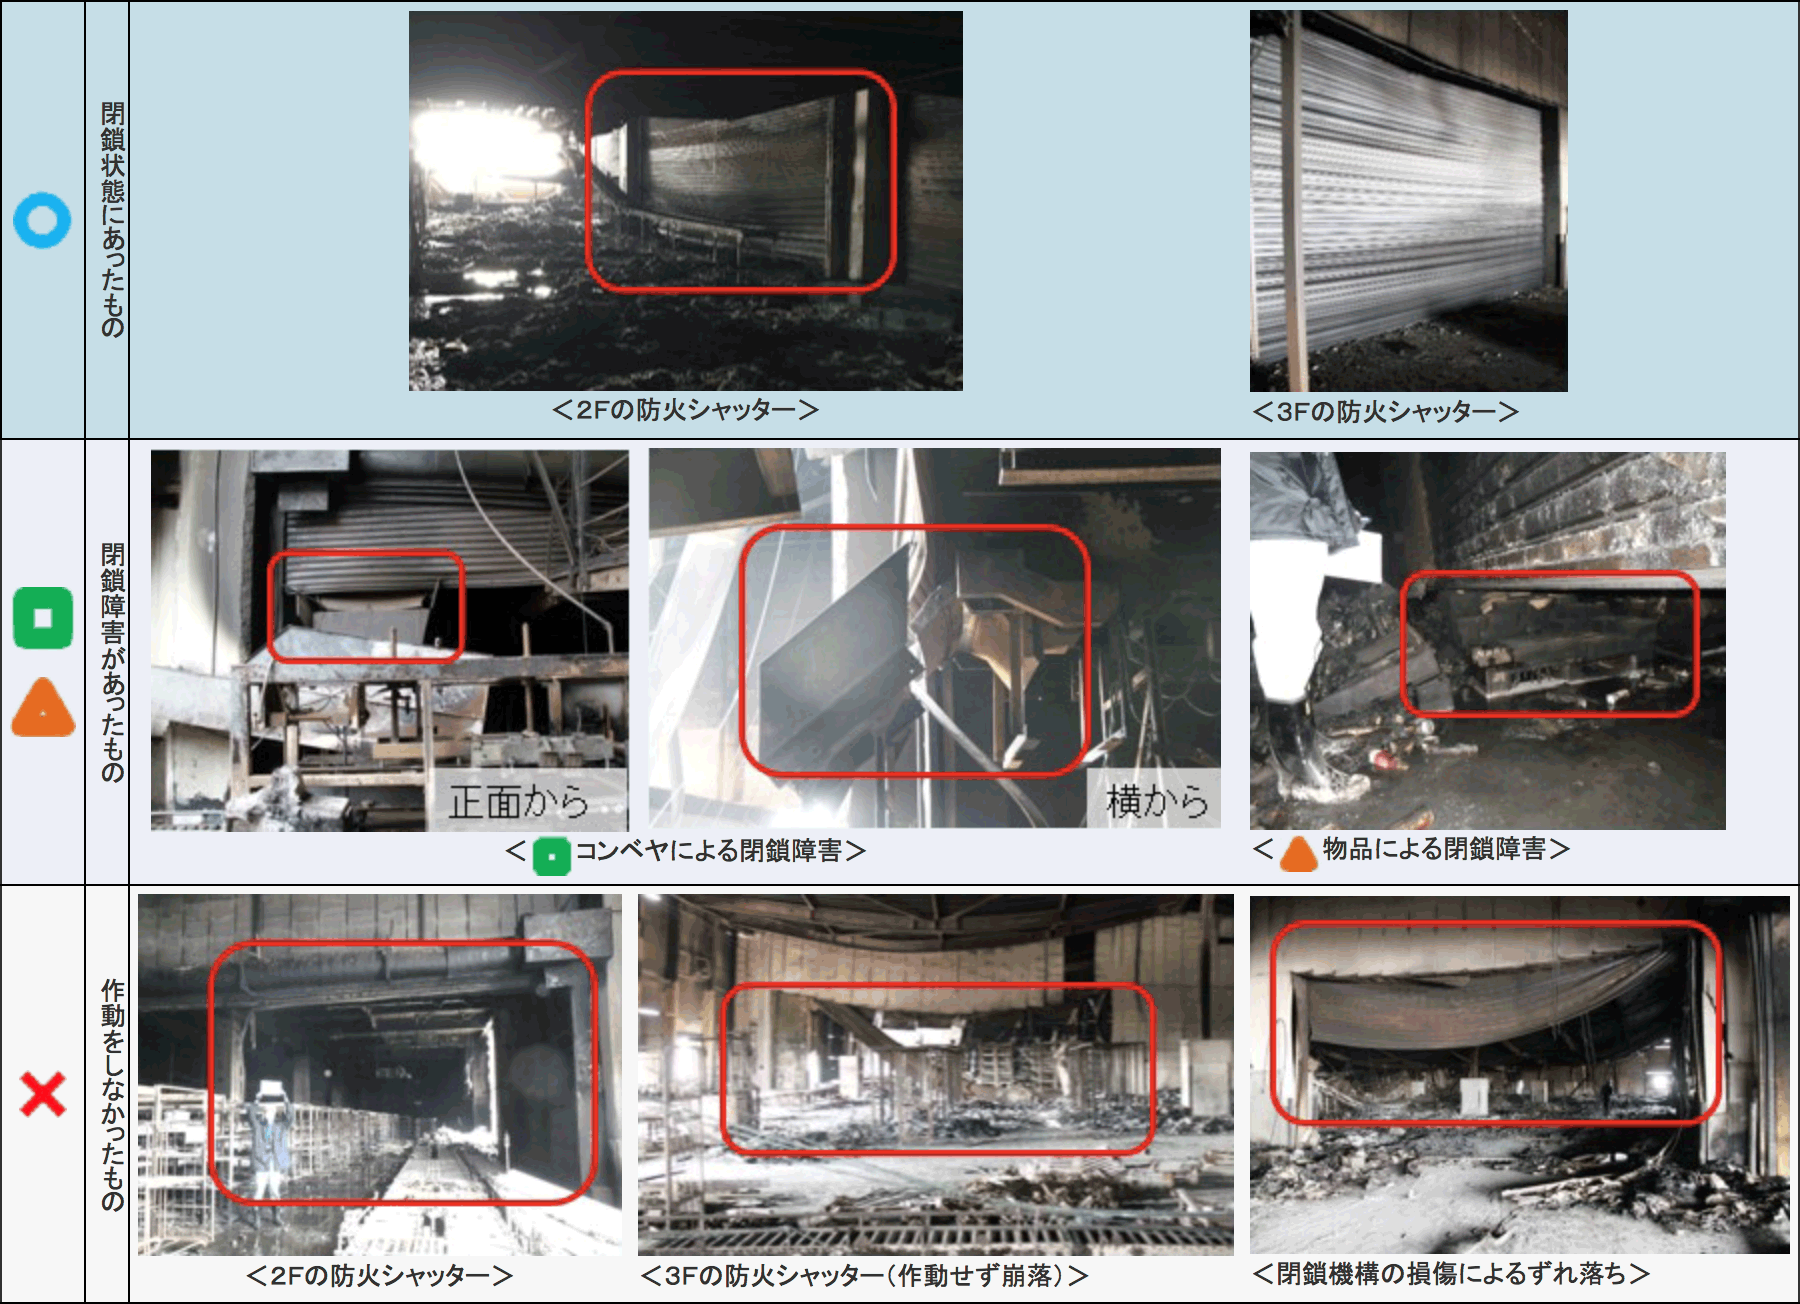 特集3-1表　防火シャッターの閉鎖状況に応じた分類の画像。